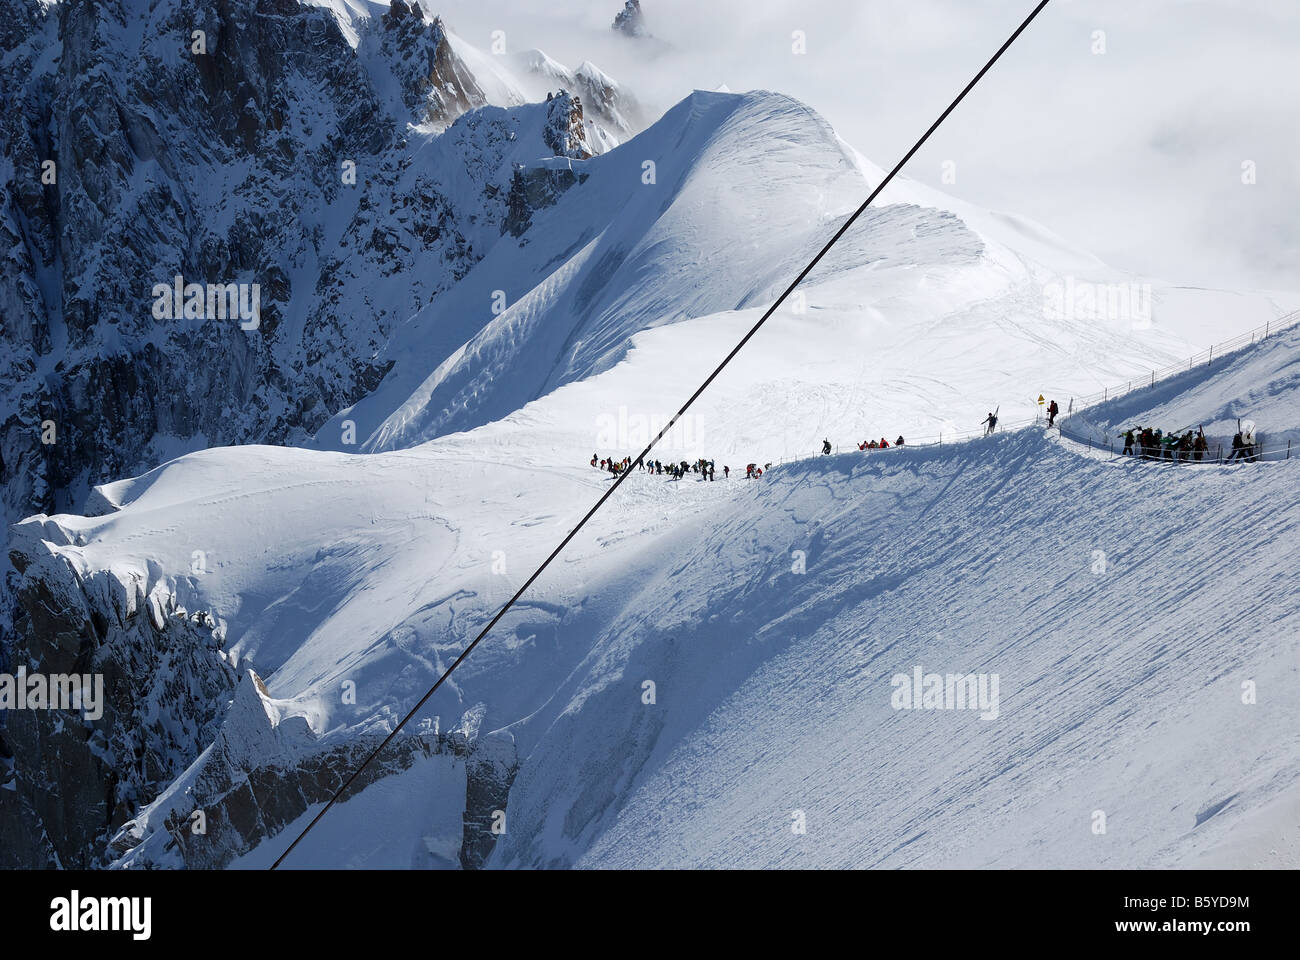 Pente de neige avec les skieurs de montagne et glacier contre des hauts sommets des Alpes Mont Blanc France câble en acier à l'avant-plan Banque D'Images